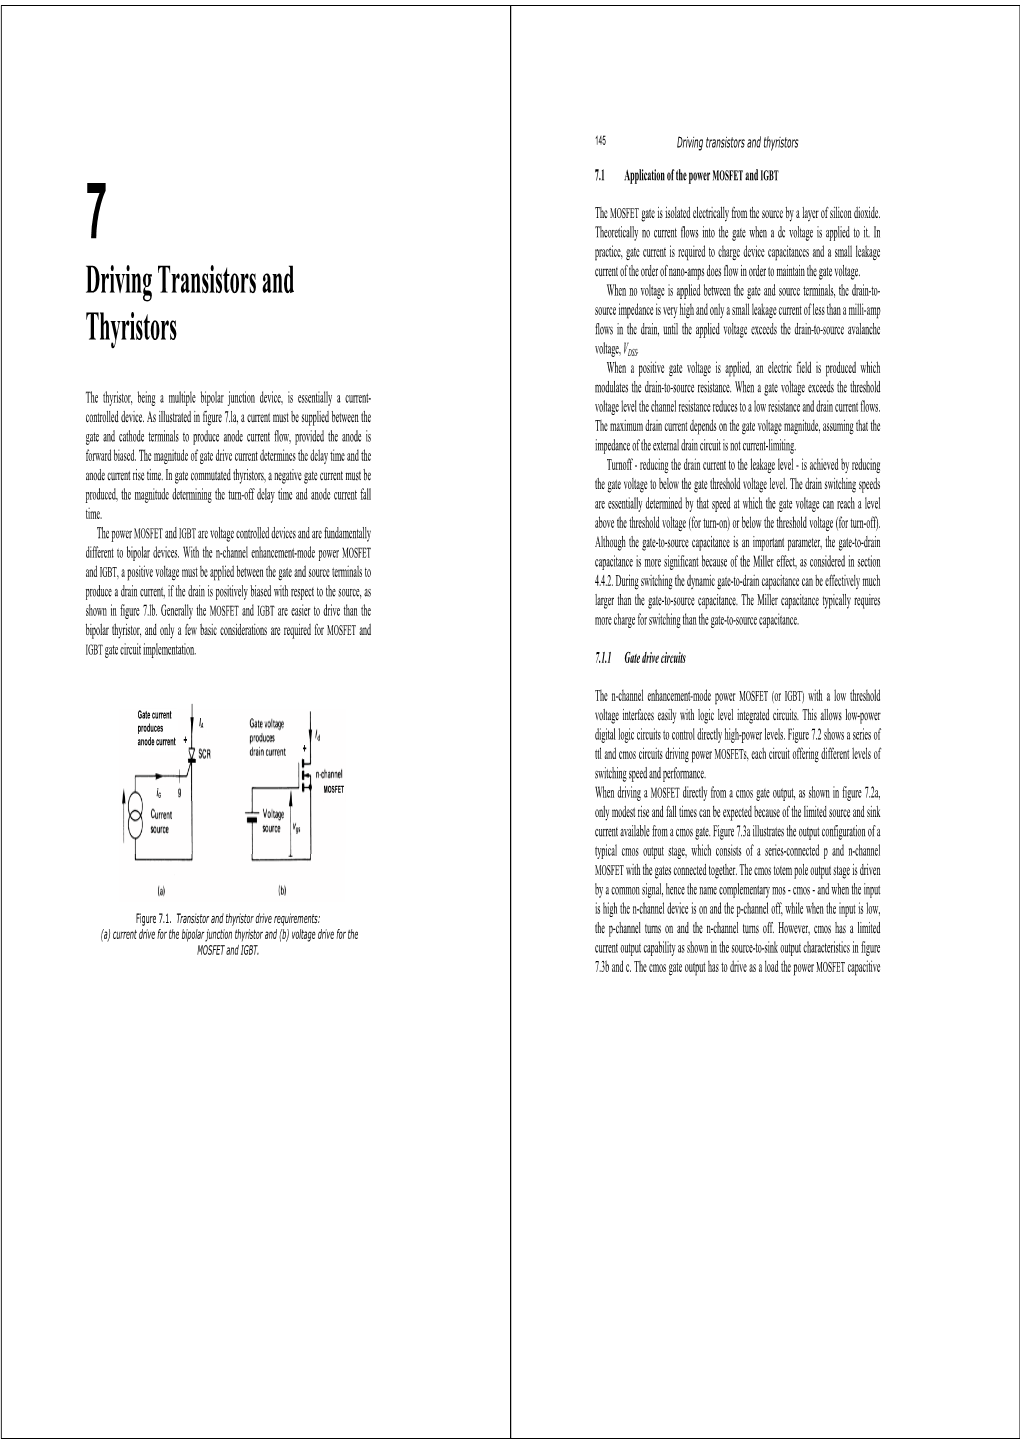 Driving Transistors and Thyristors